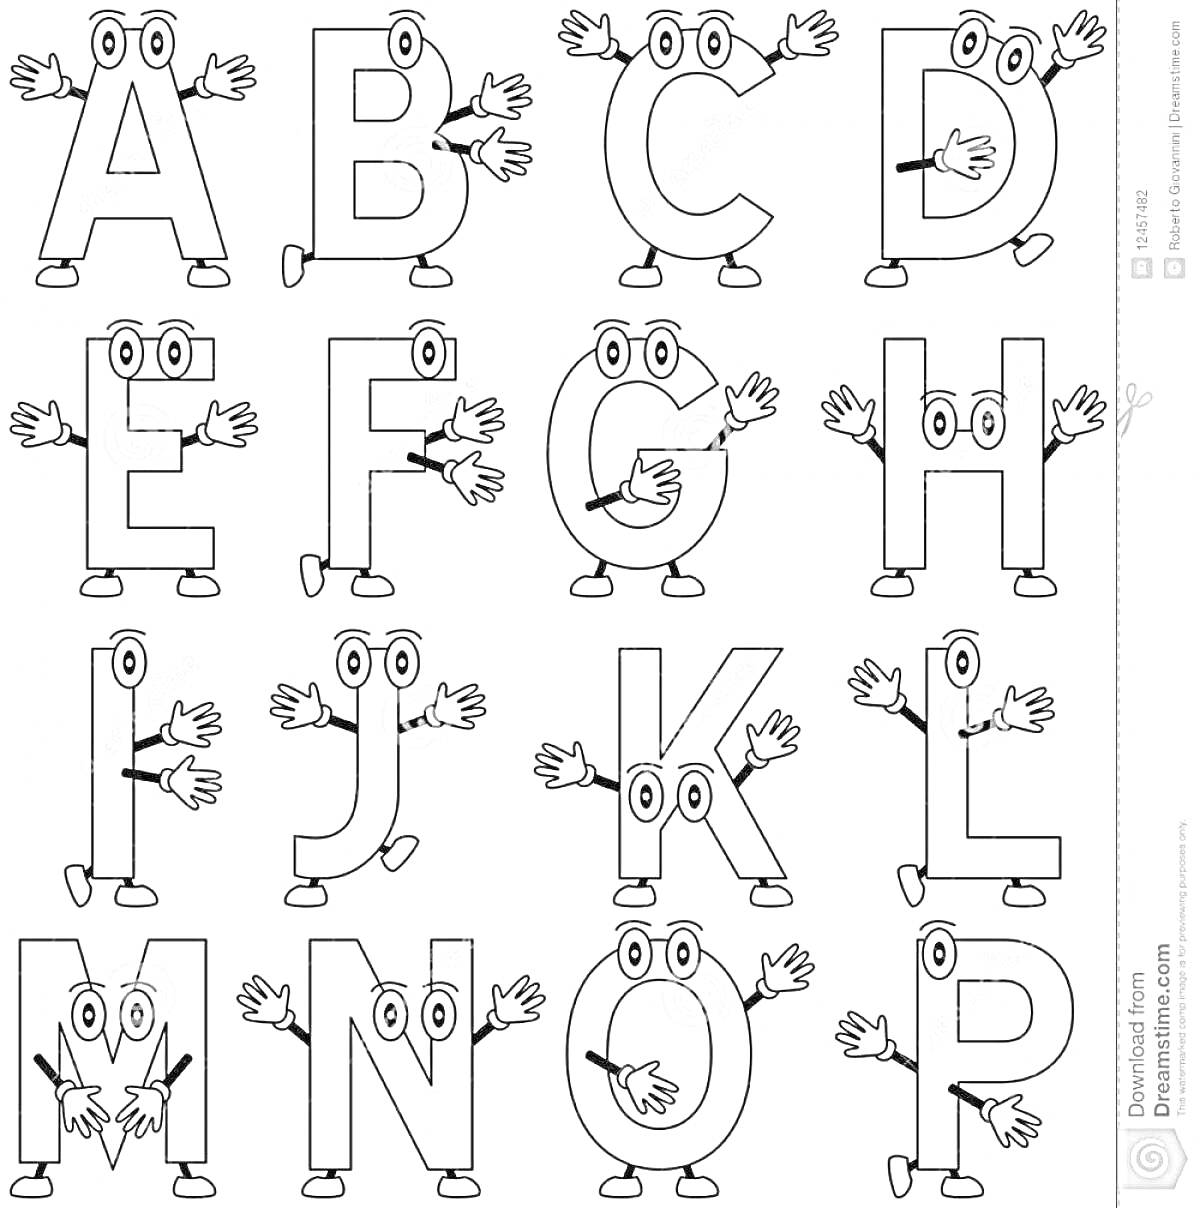 Раскраска Алфавит для раскраски с персонажами в виде букв A-P с глазами, руками и ногами